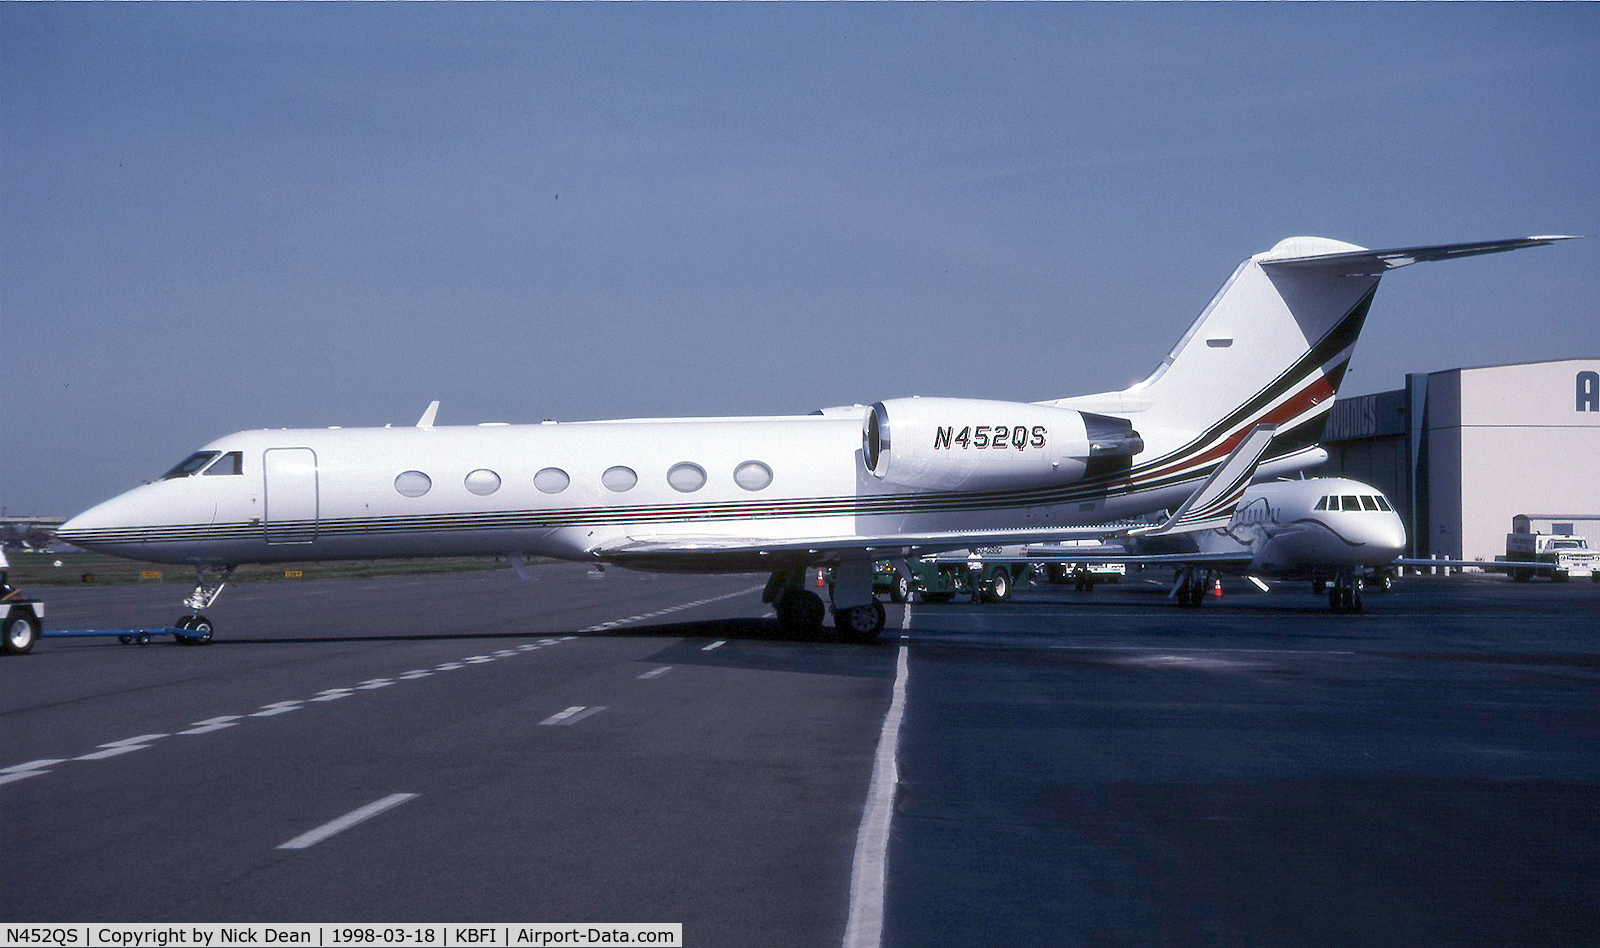 N452QS, 1998 Gulfstream Aerospace G-IV C/N 1352, KBFI